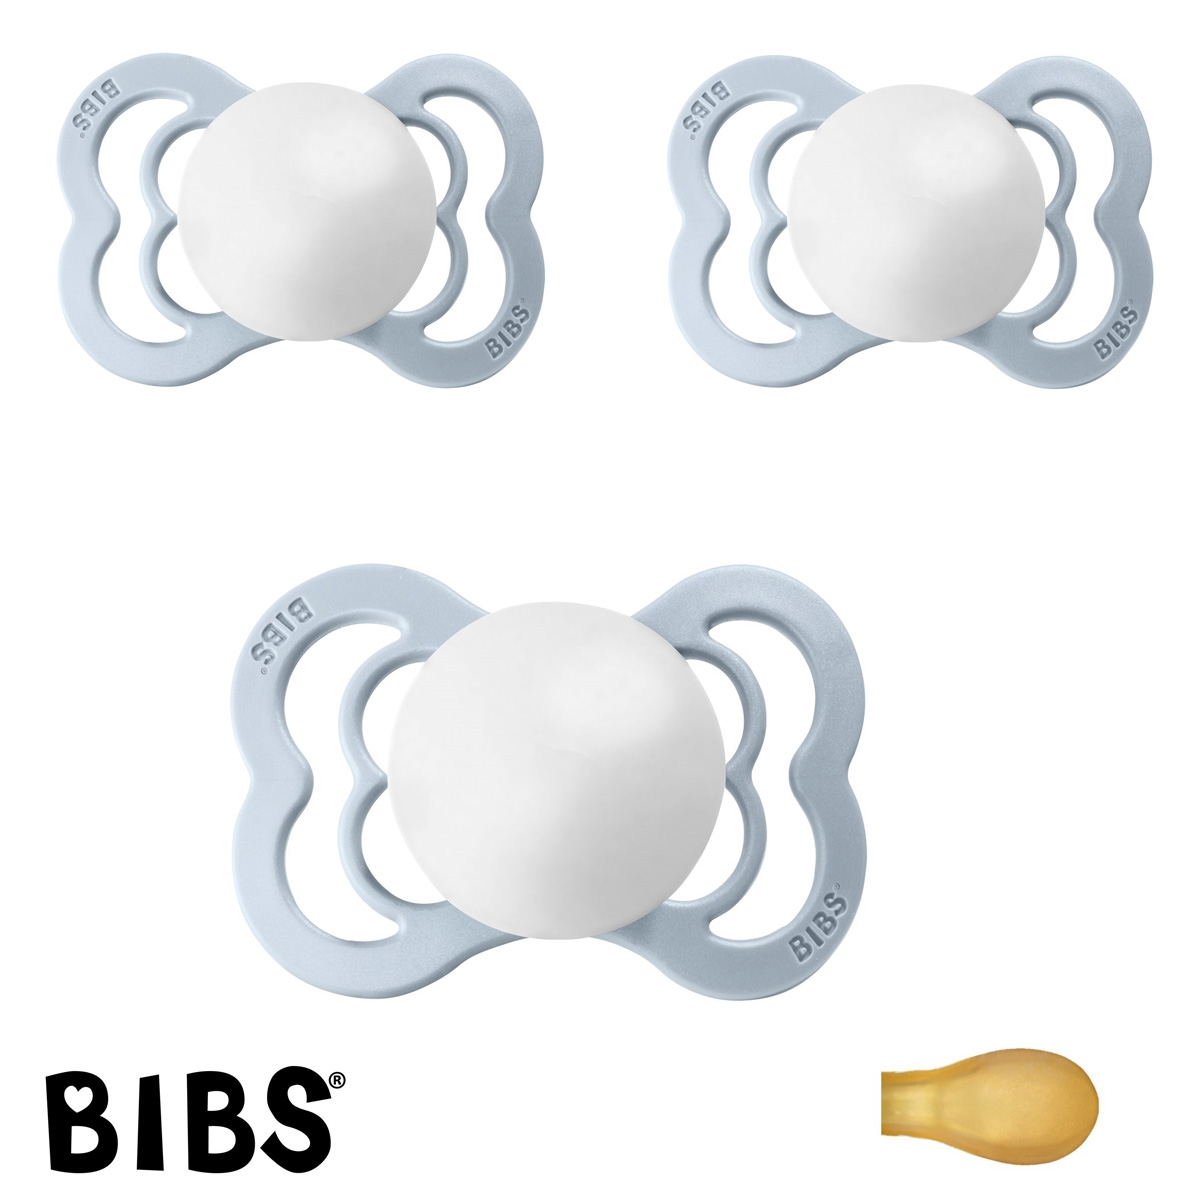 BIBS Supreme Sutter med navn, 3 Babyblue, Symmetrisk Latex str.1 Pakke med 3 sutter